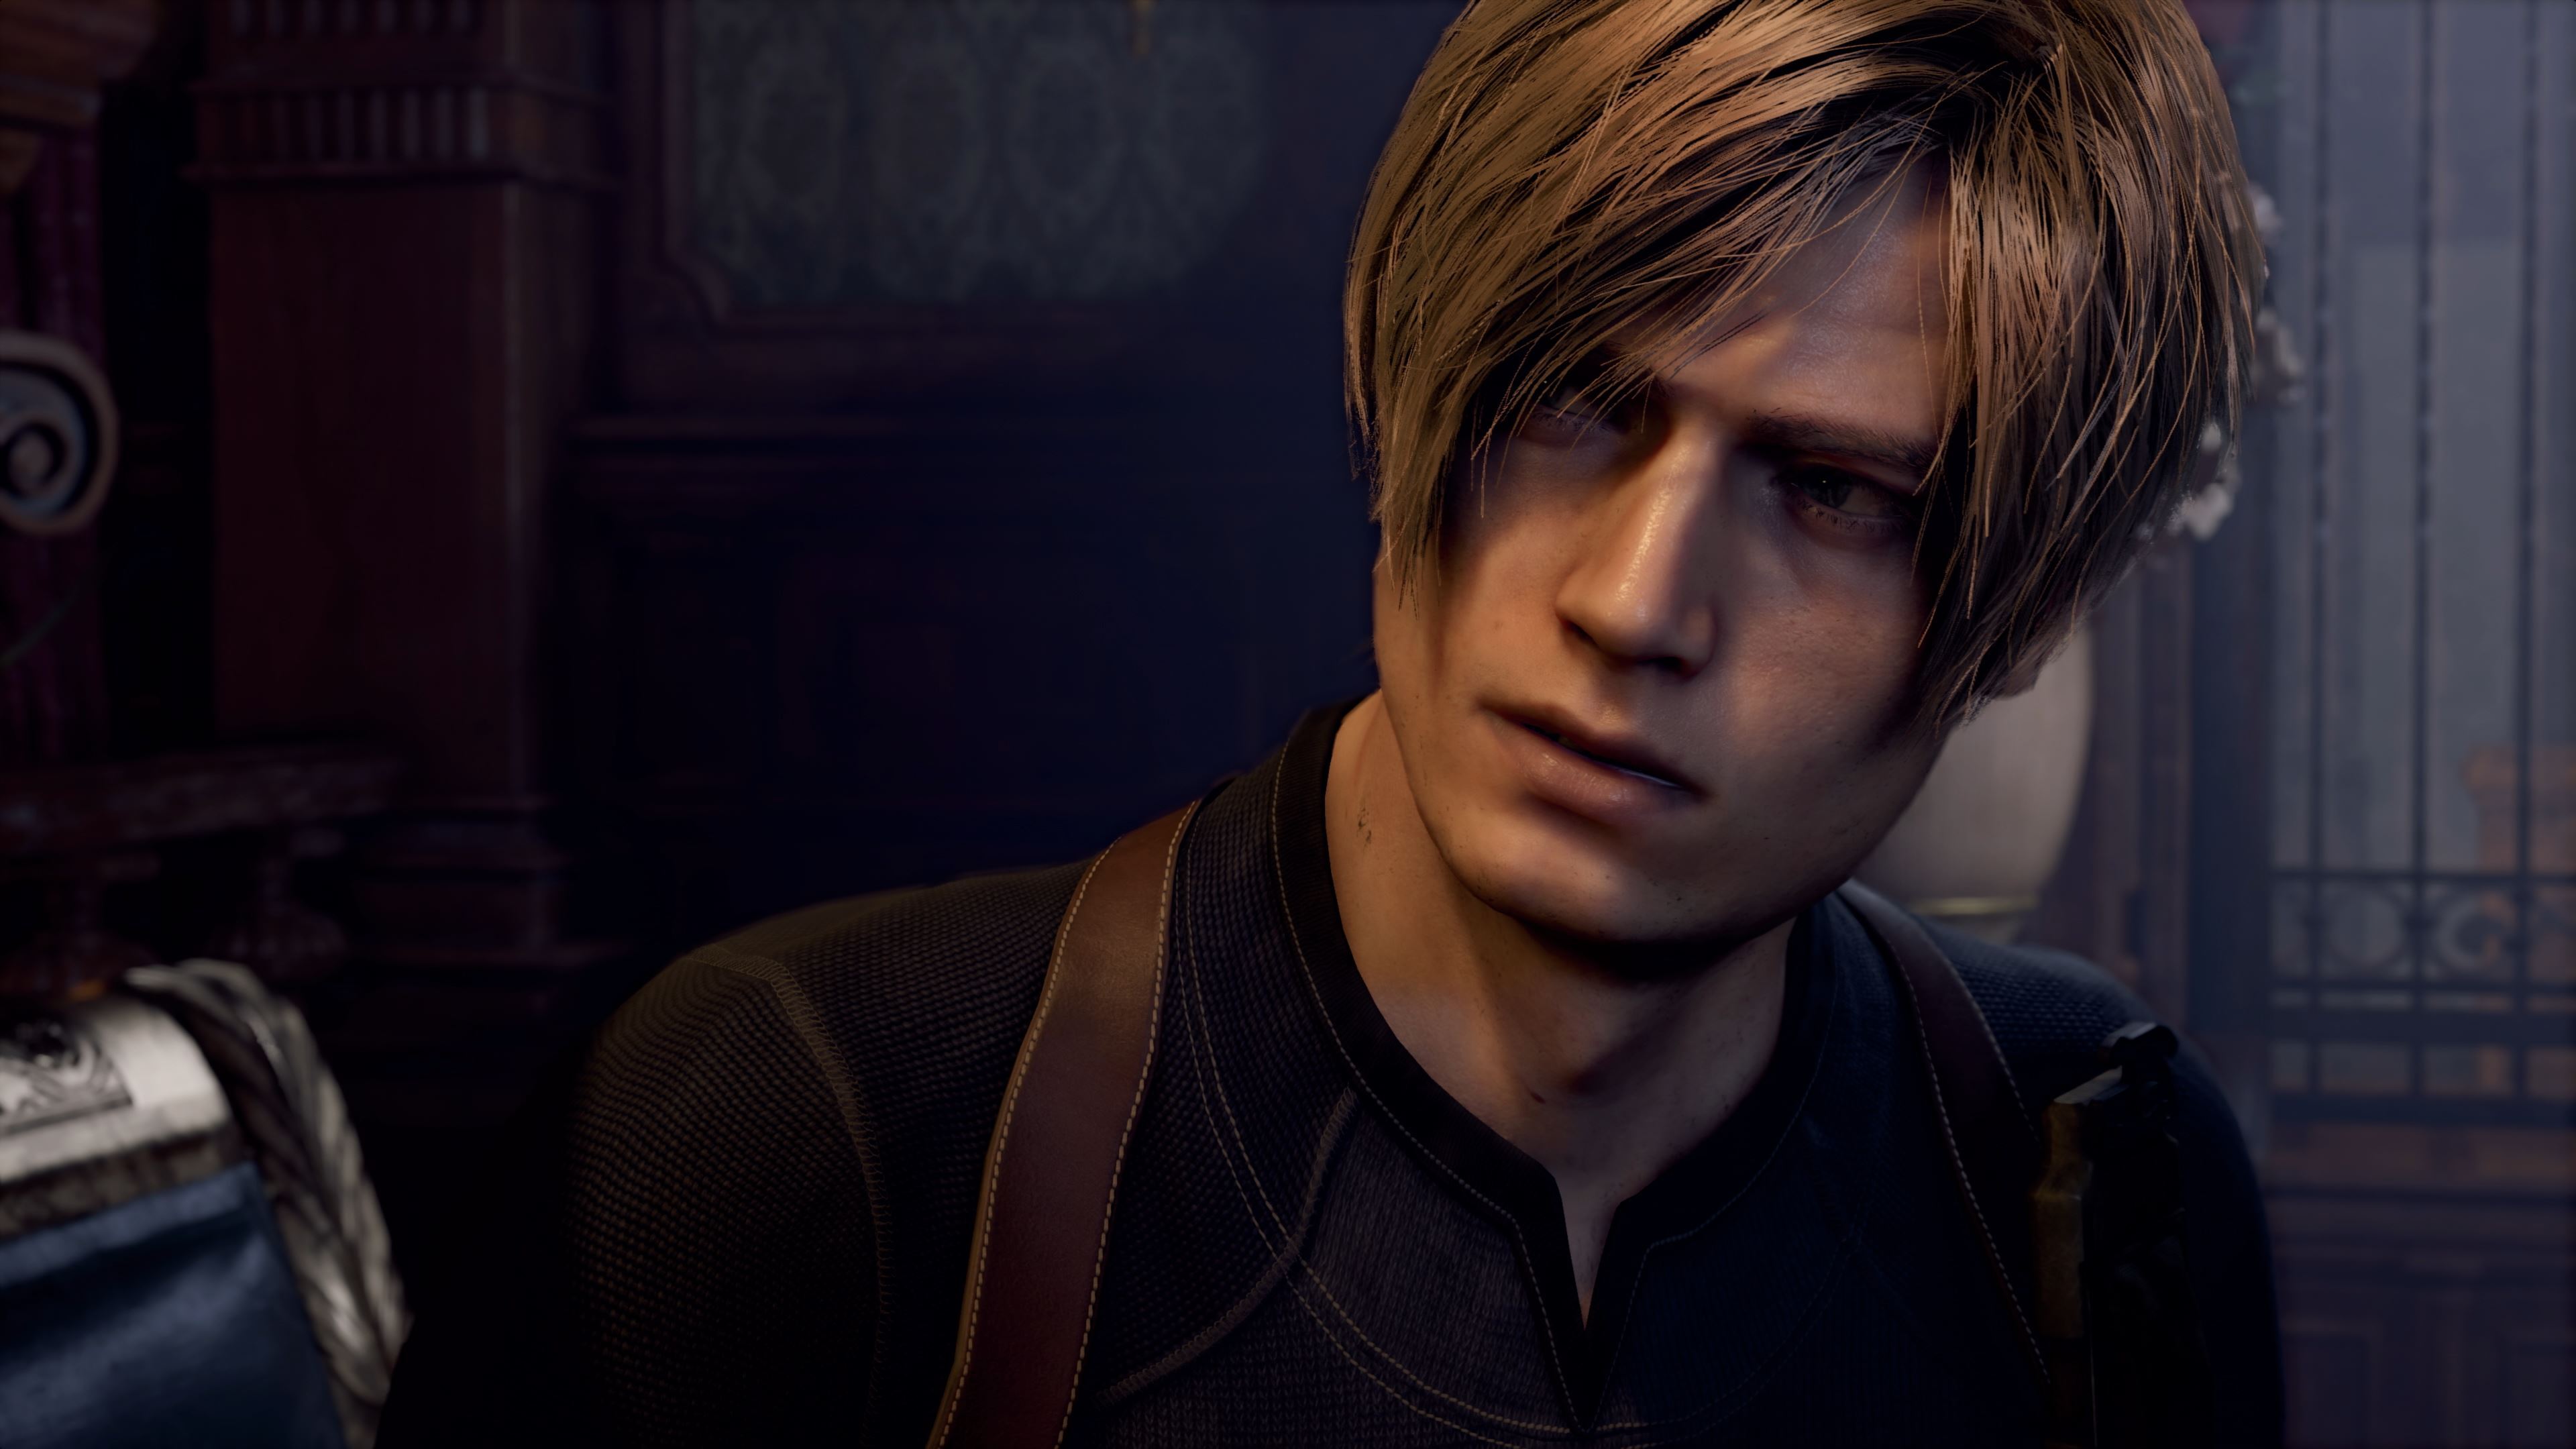 Resident Evil (Remake) - GameSpot